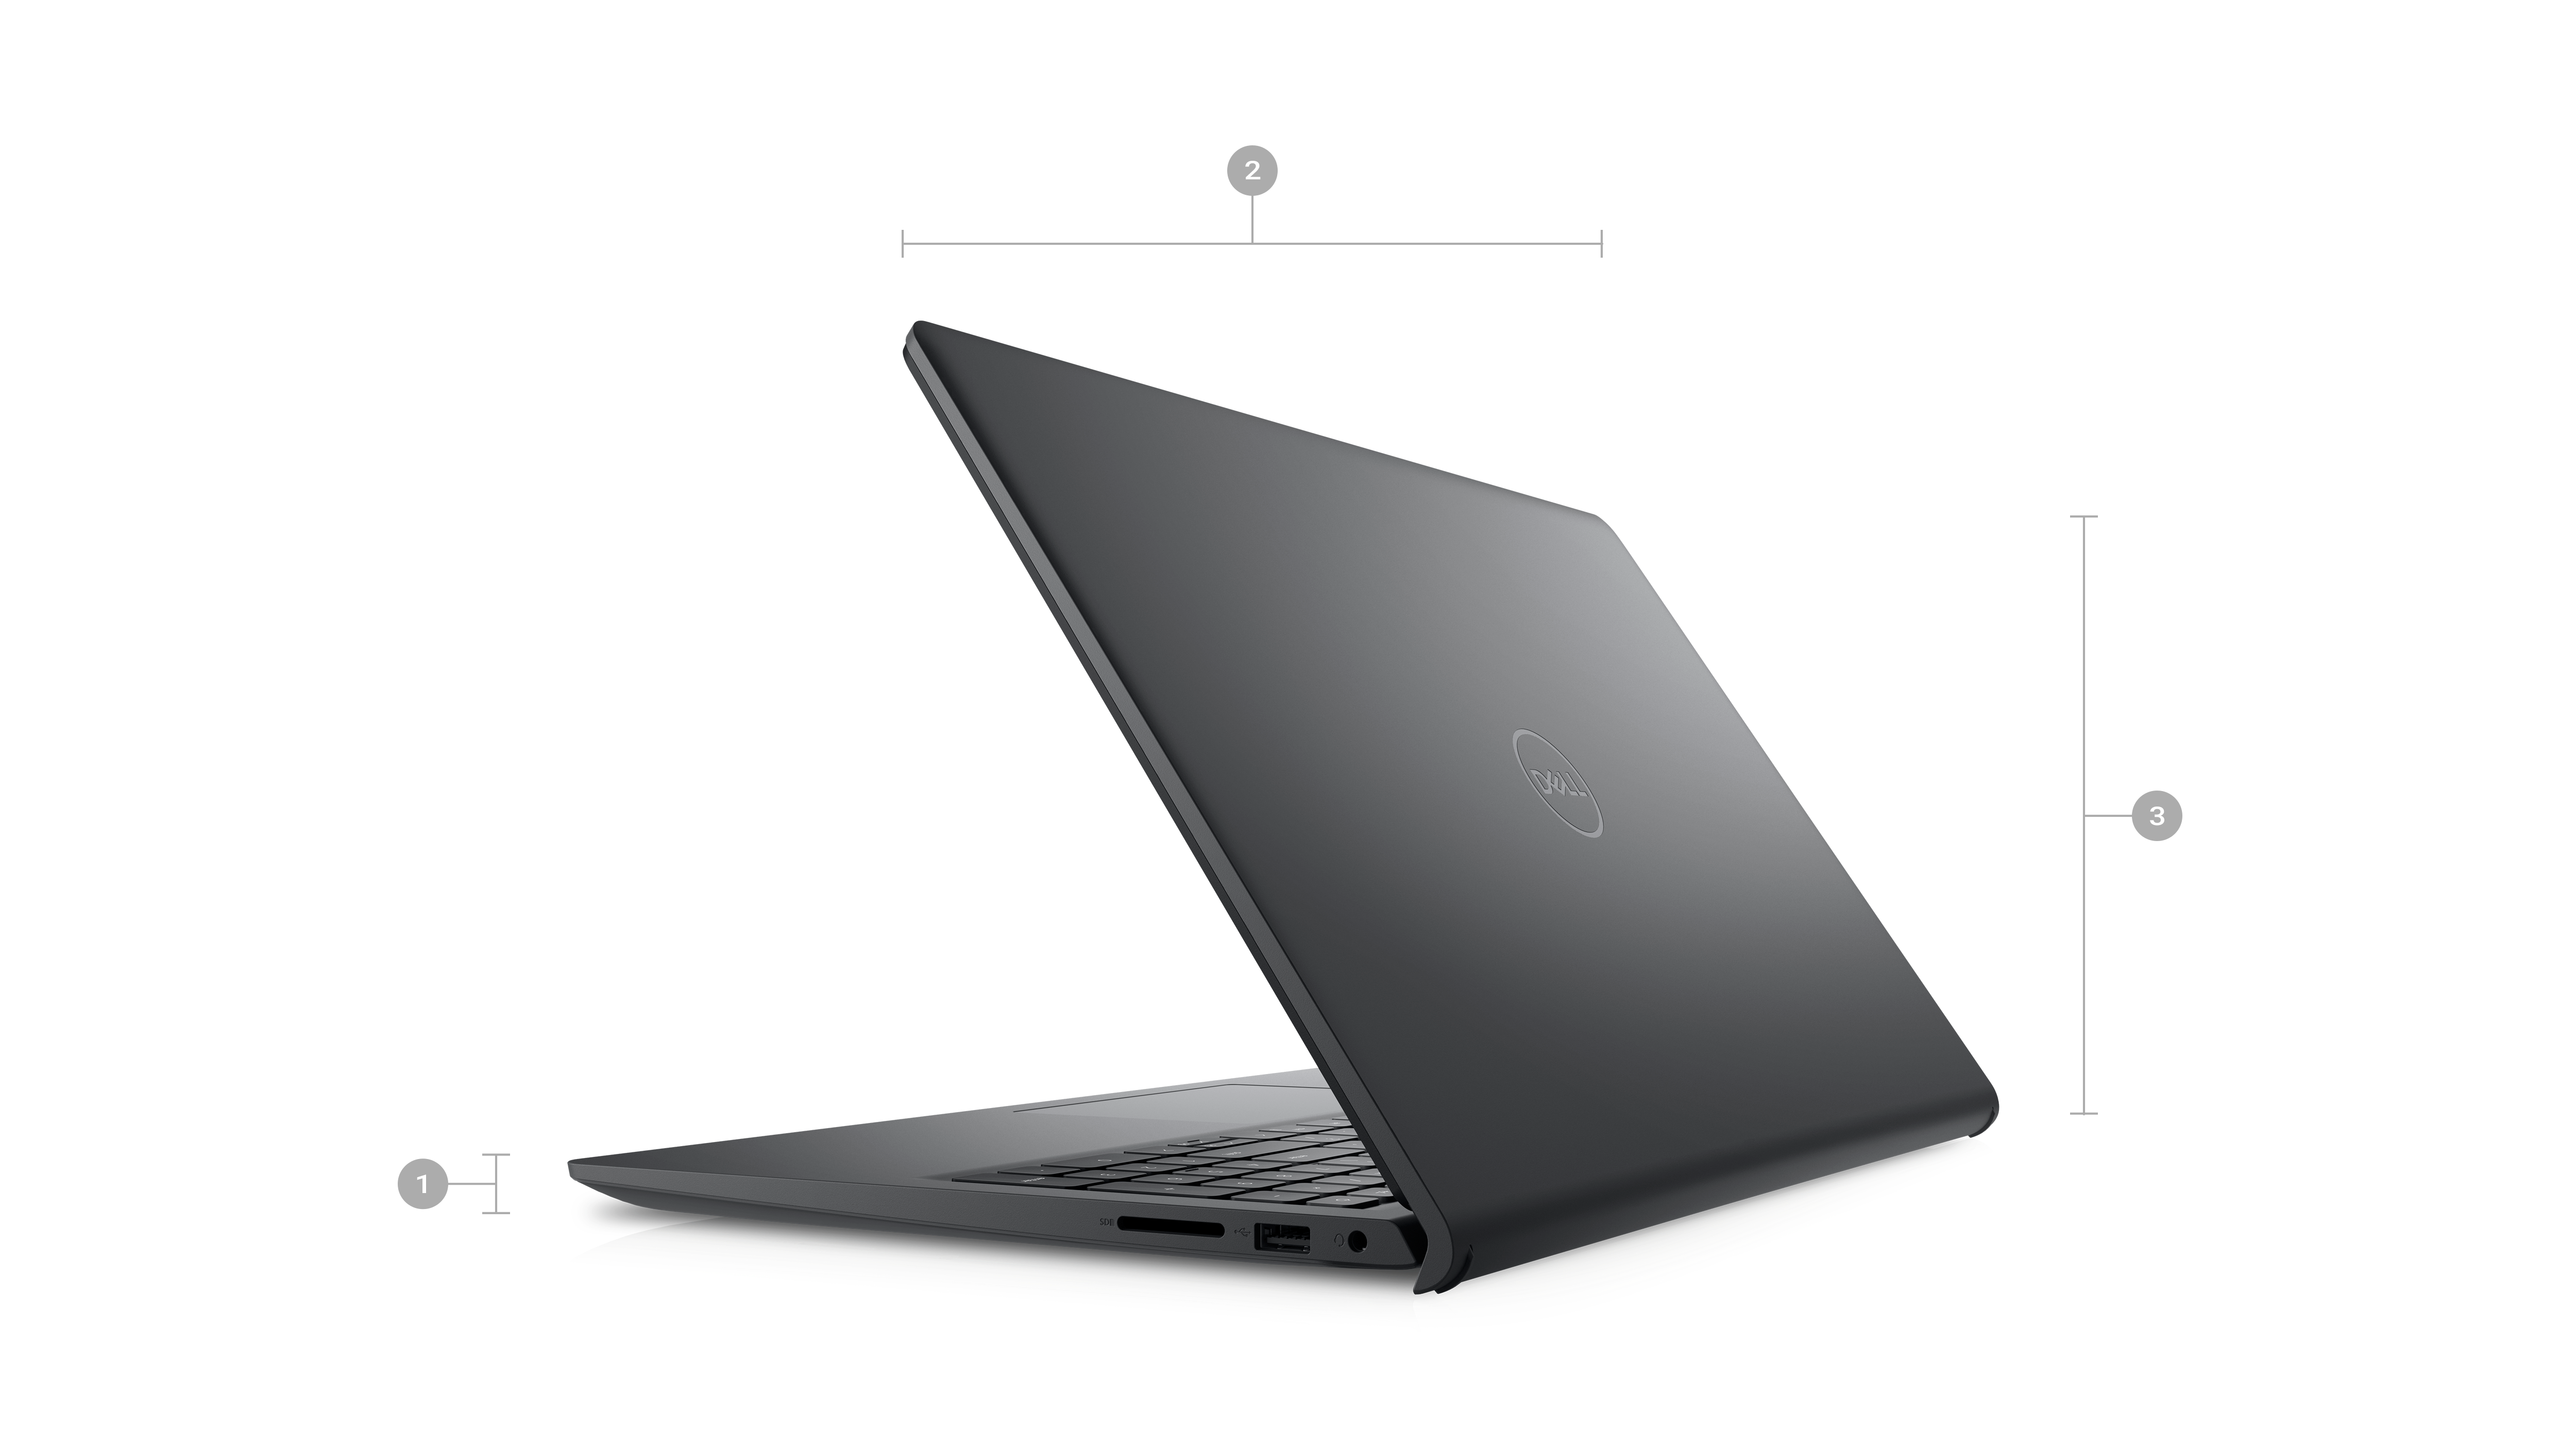 Bild eines Dell Inspiron 15 3520-Laptops mit sichtbarer Rückseite und Zahlen von 1 bis 3 für Produktabmessungen.